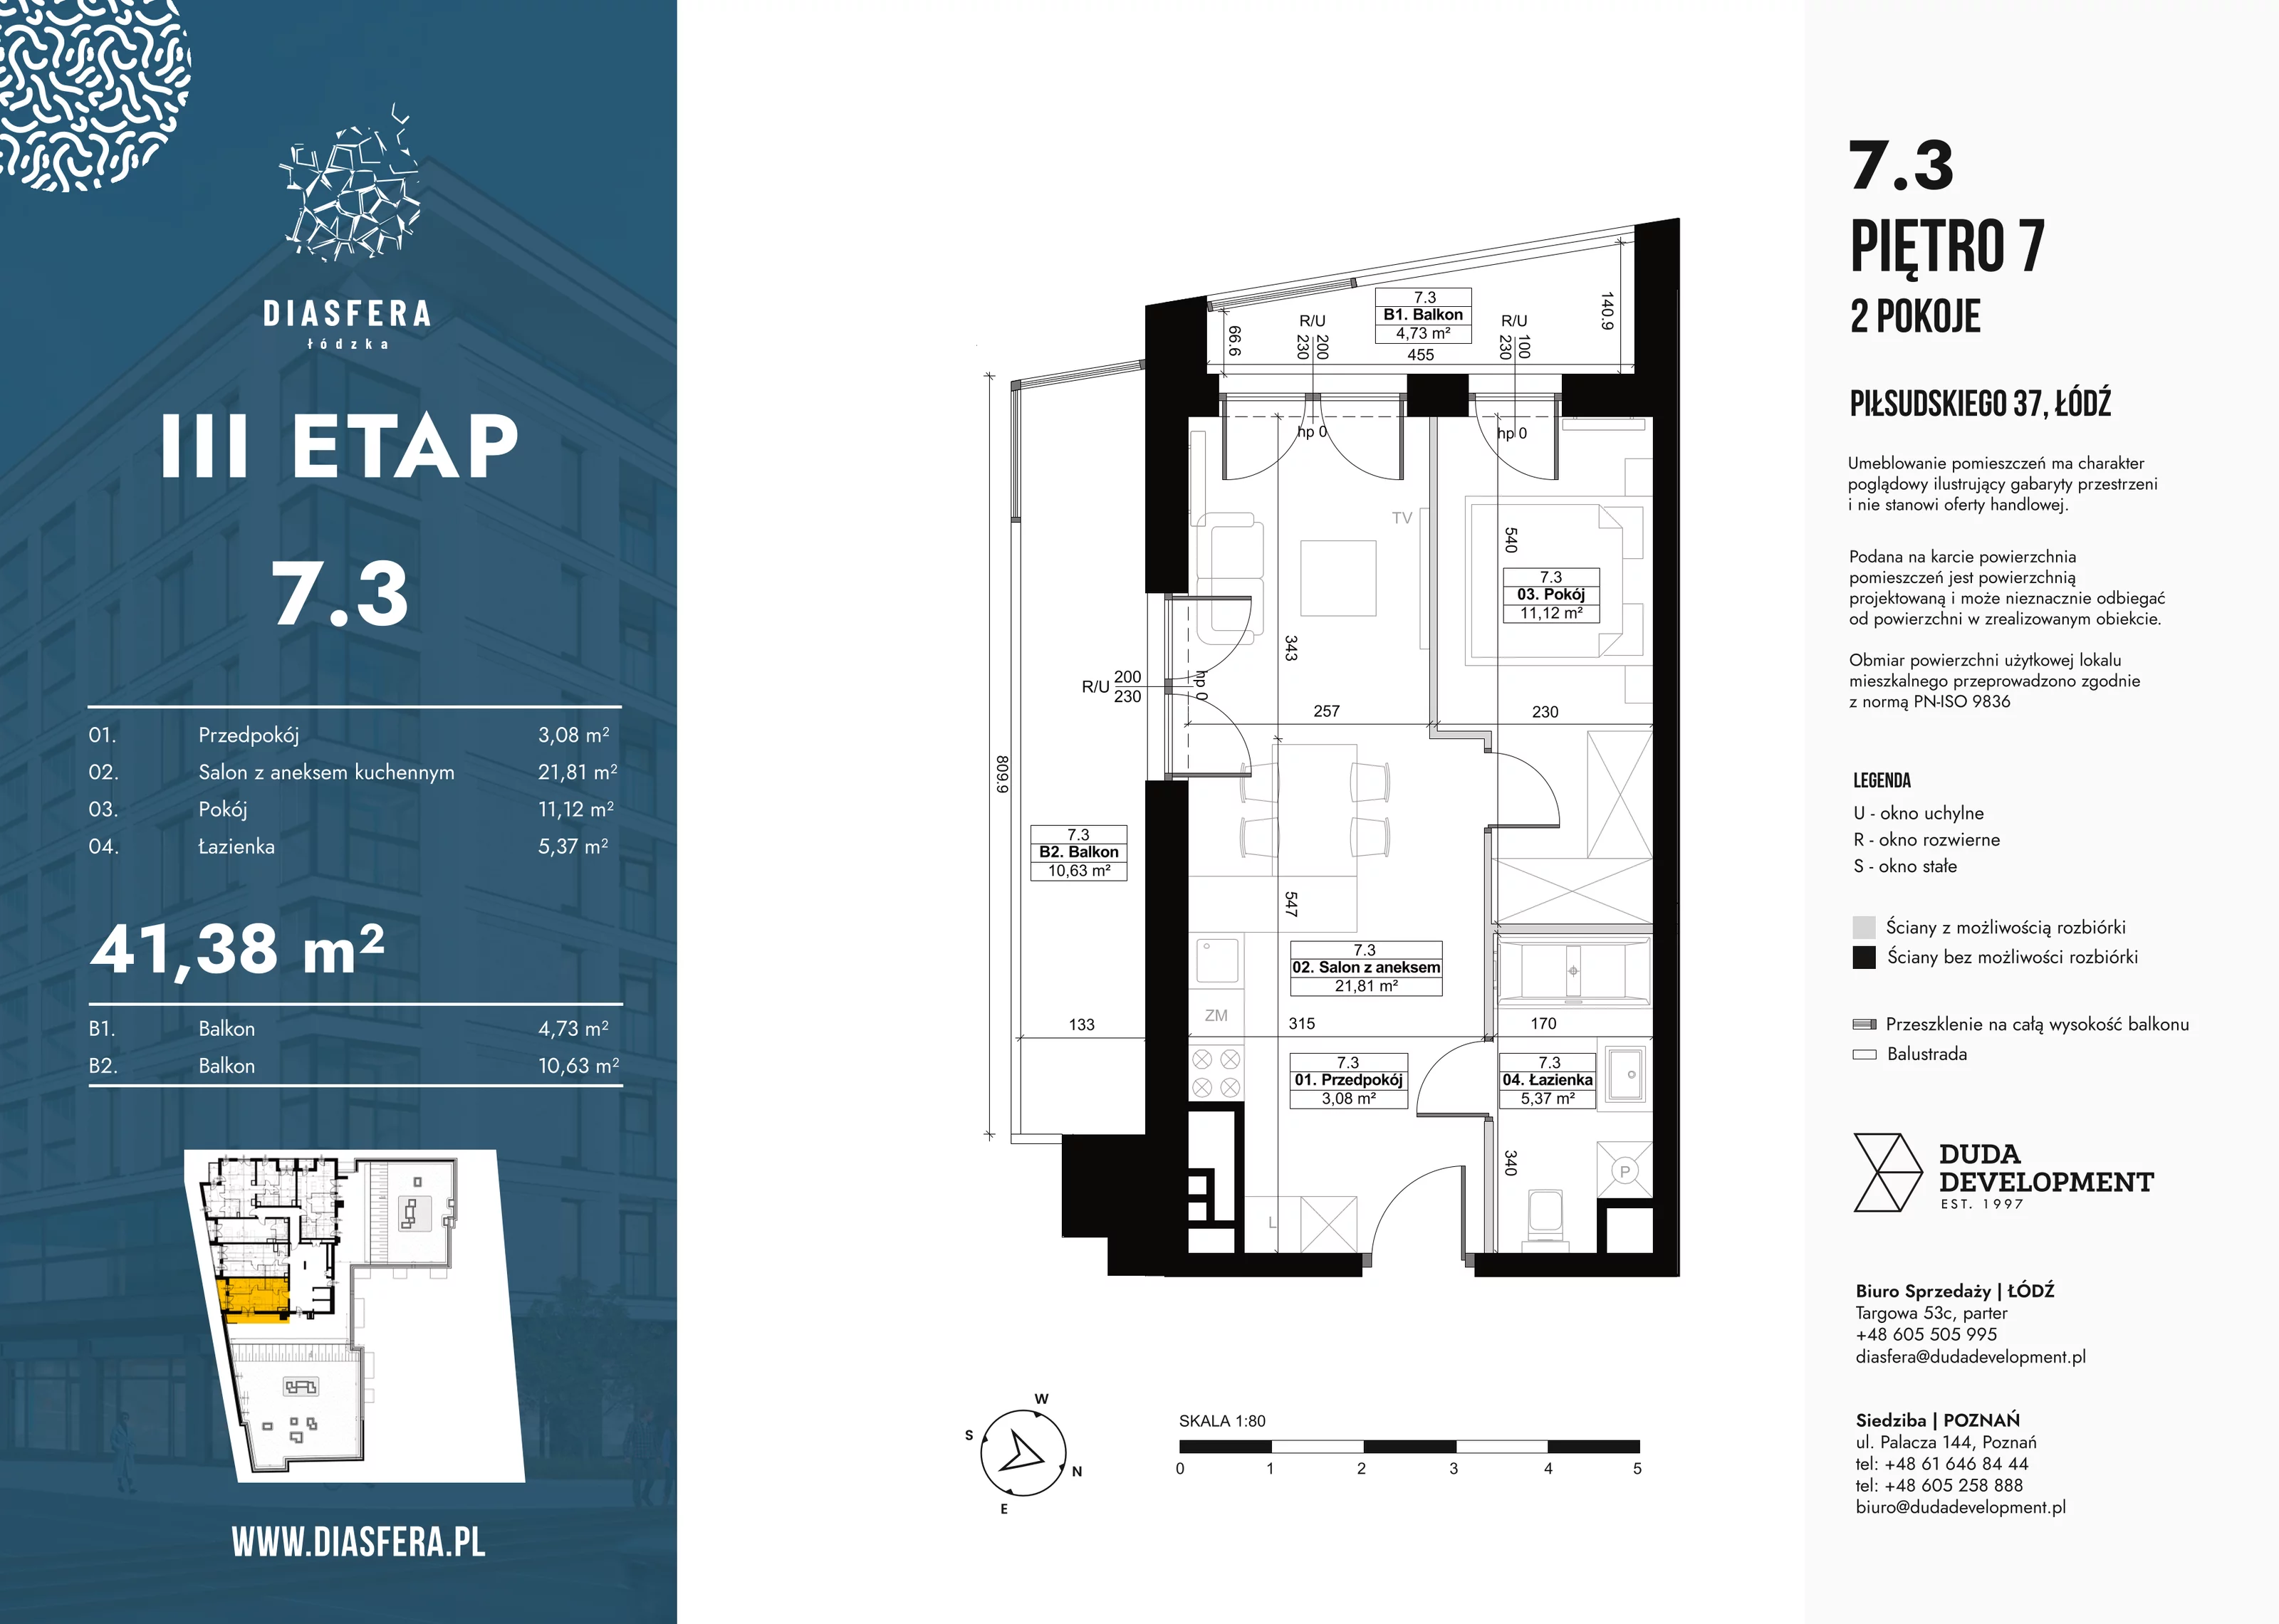 Mieszkanie 41,38 m², piętro 7, oferta nr 7_3, Diasfera III, Łódź, Śródmieście, al. Piłsudskiego 37